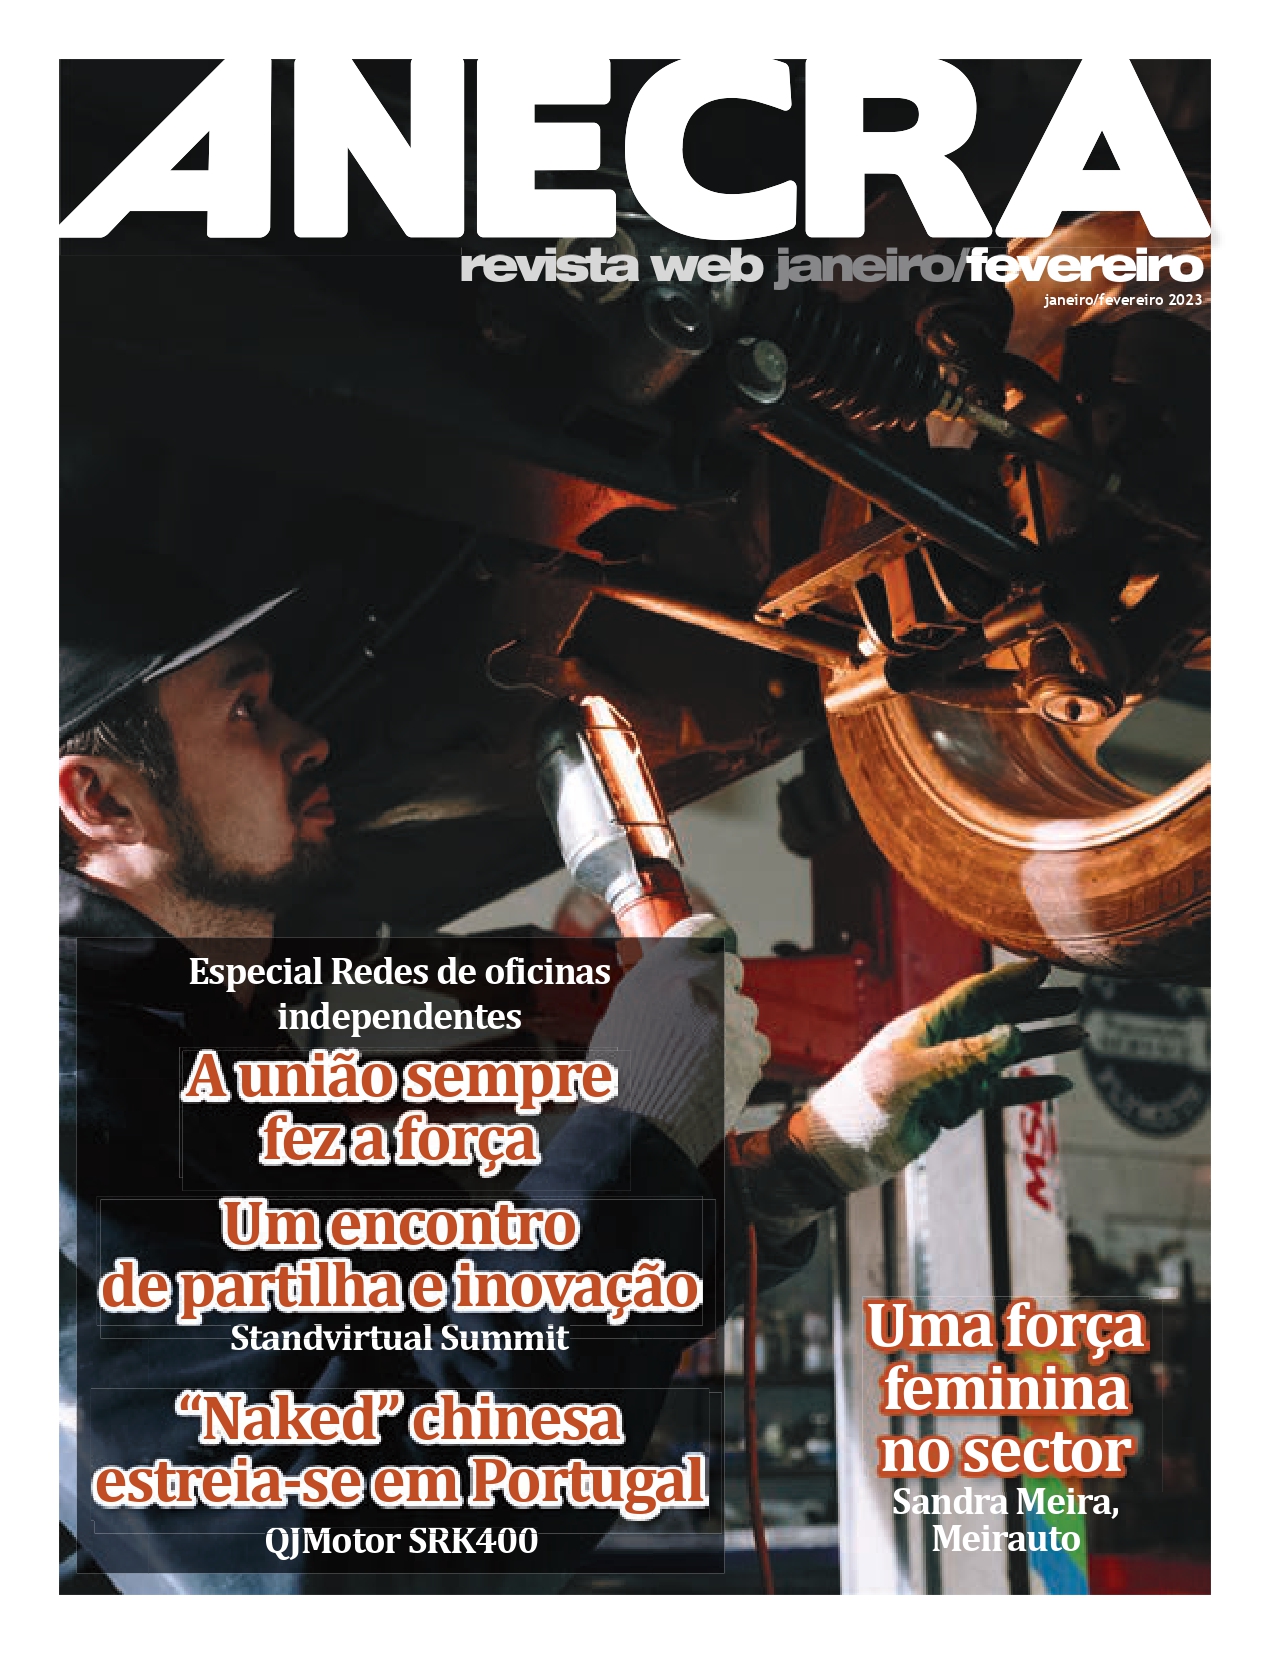 ANECRA Revista 390 | Revista Web Janeiro/Fevereiro 2023